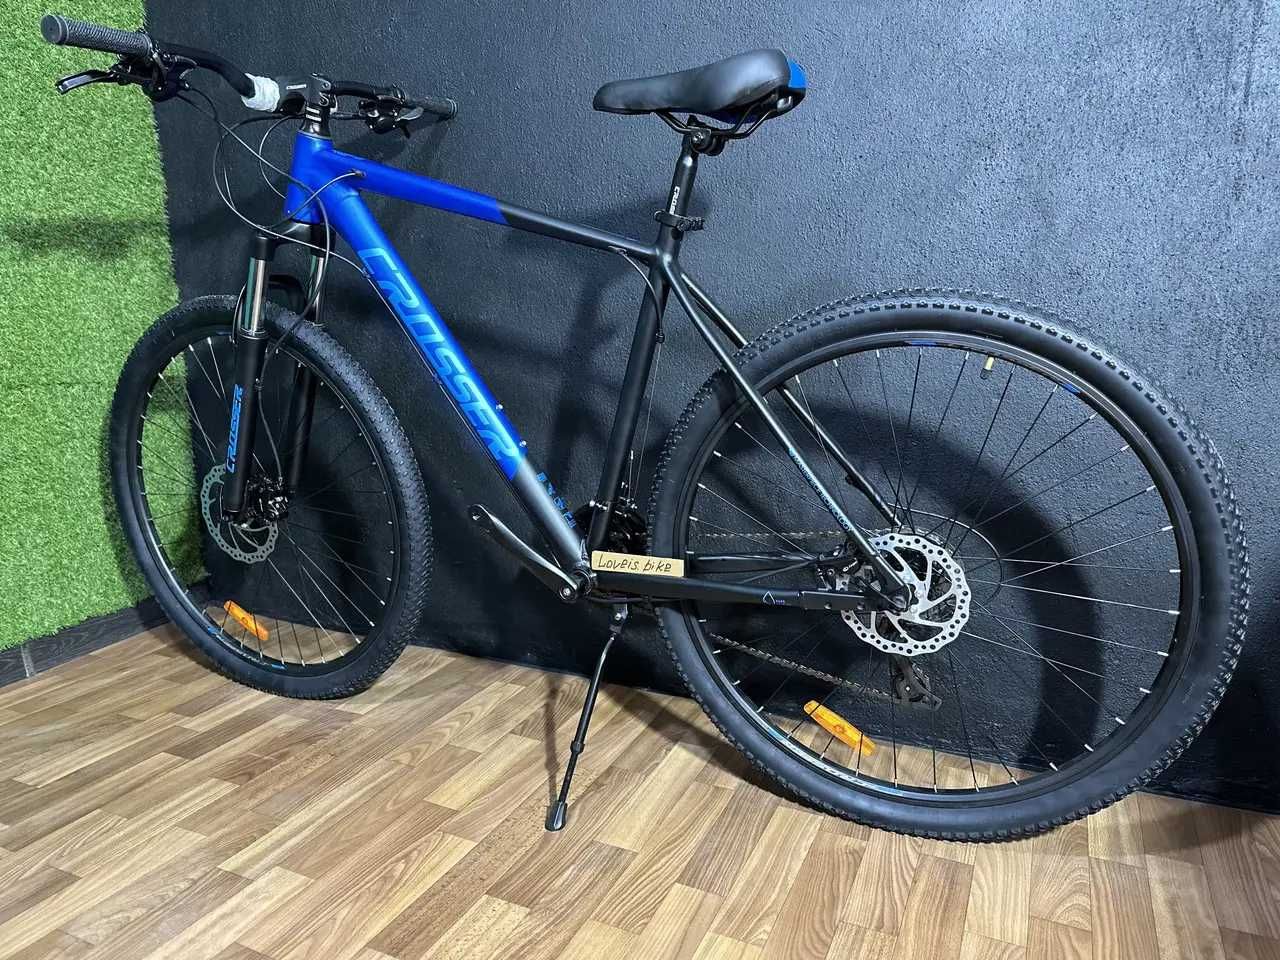 Горный алюминиевый велосипед Crosser MT041 27-29 гидравлика 19' ,21'